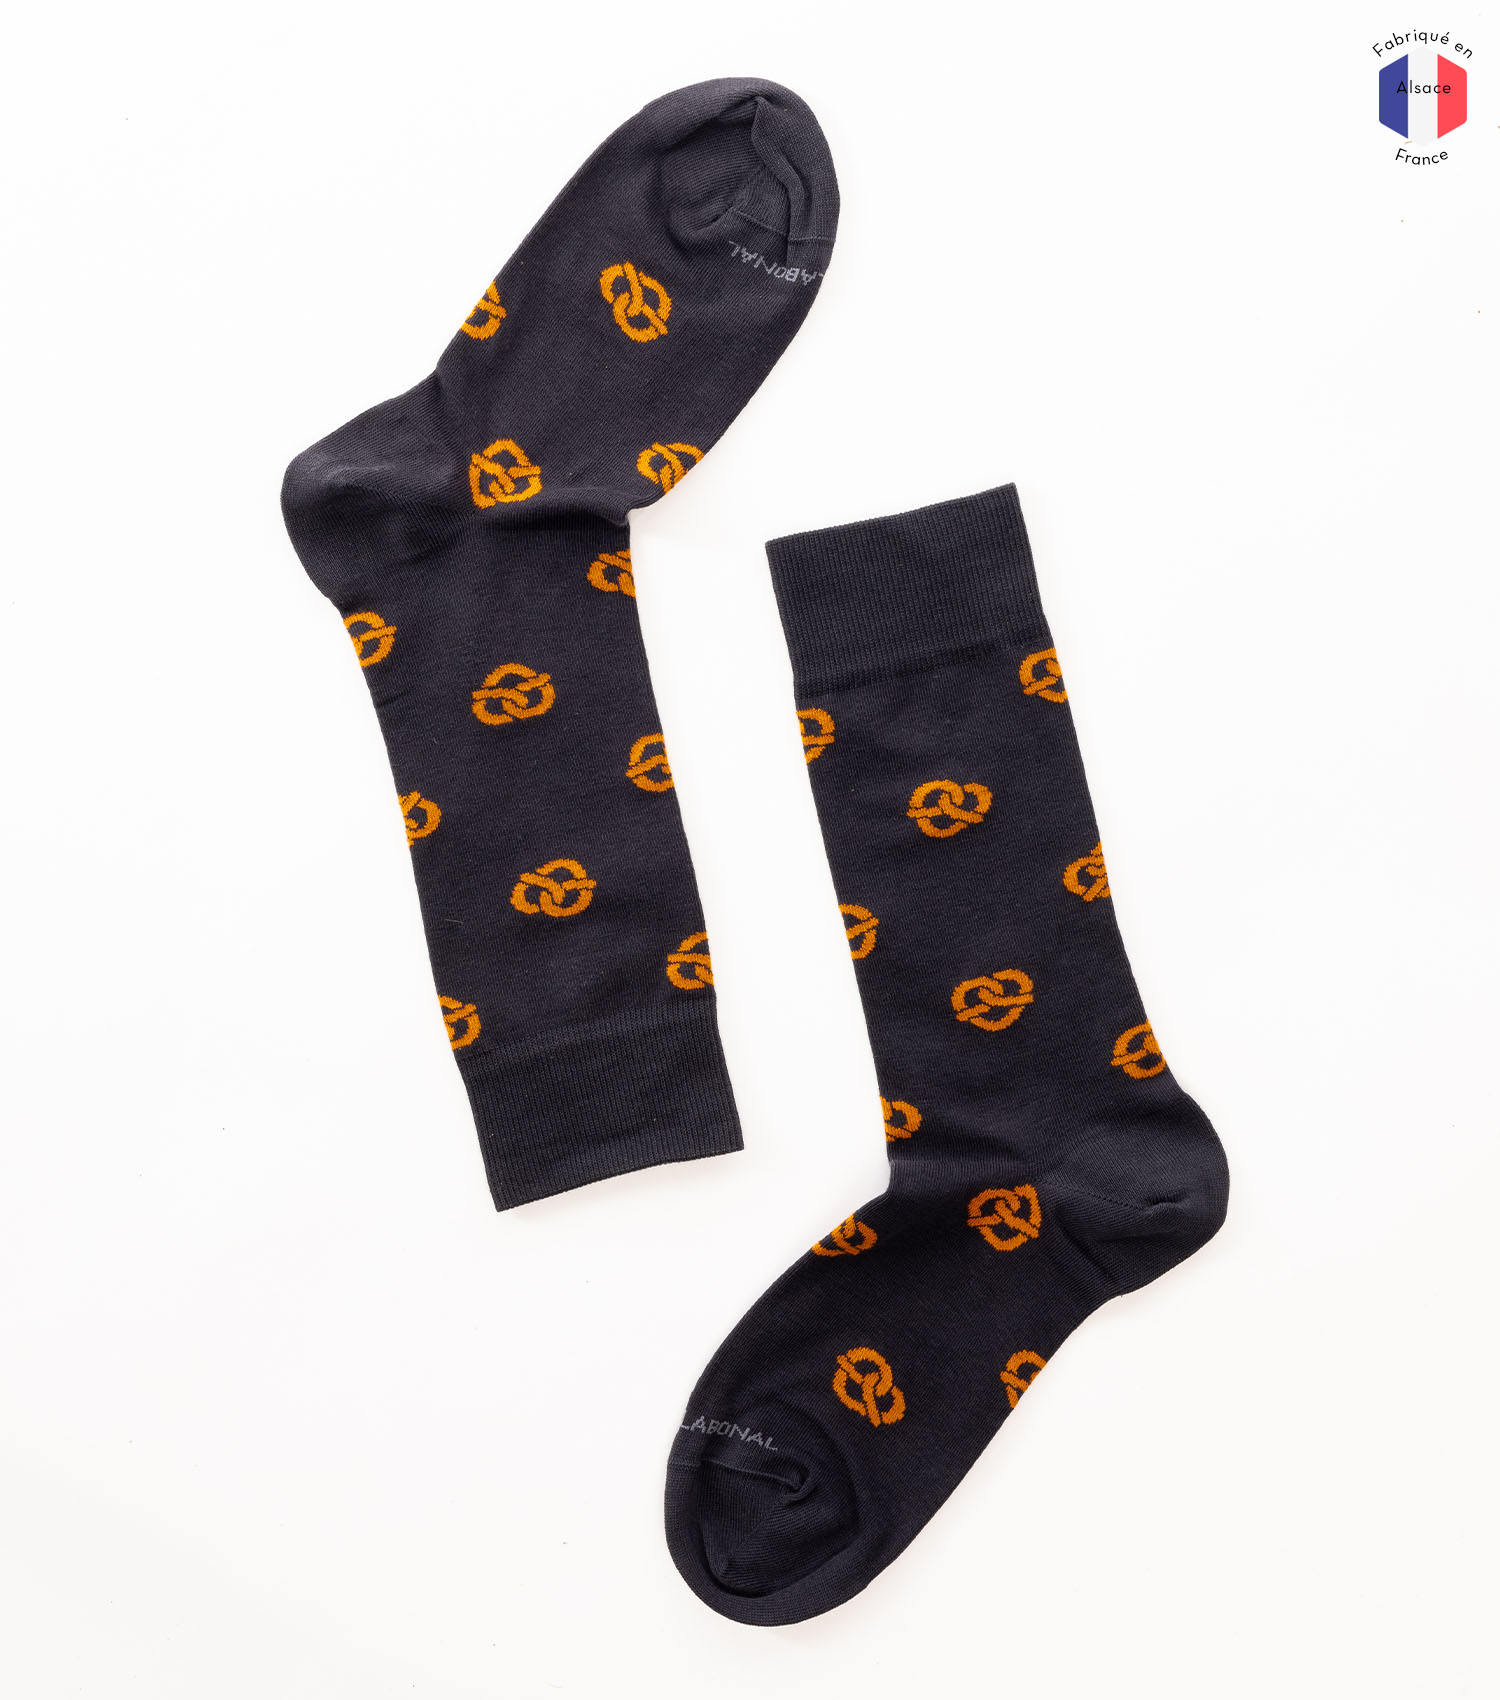 Socken mit Brezel-Muster